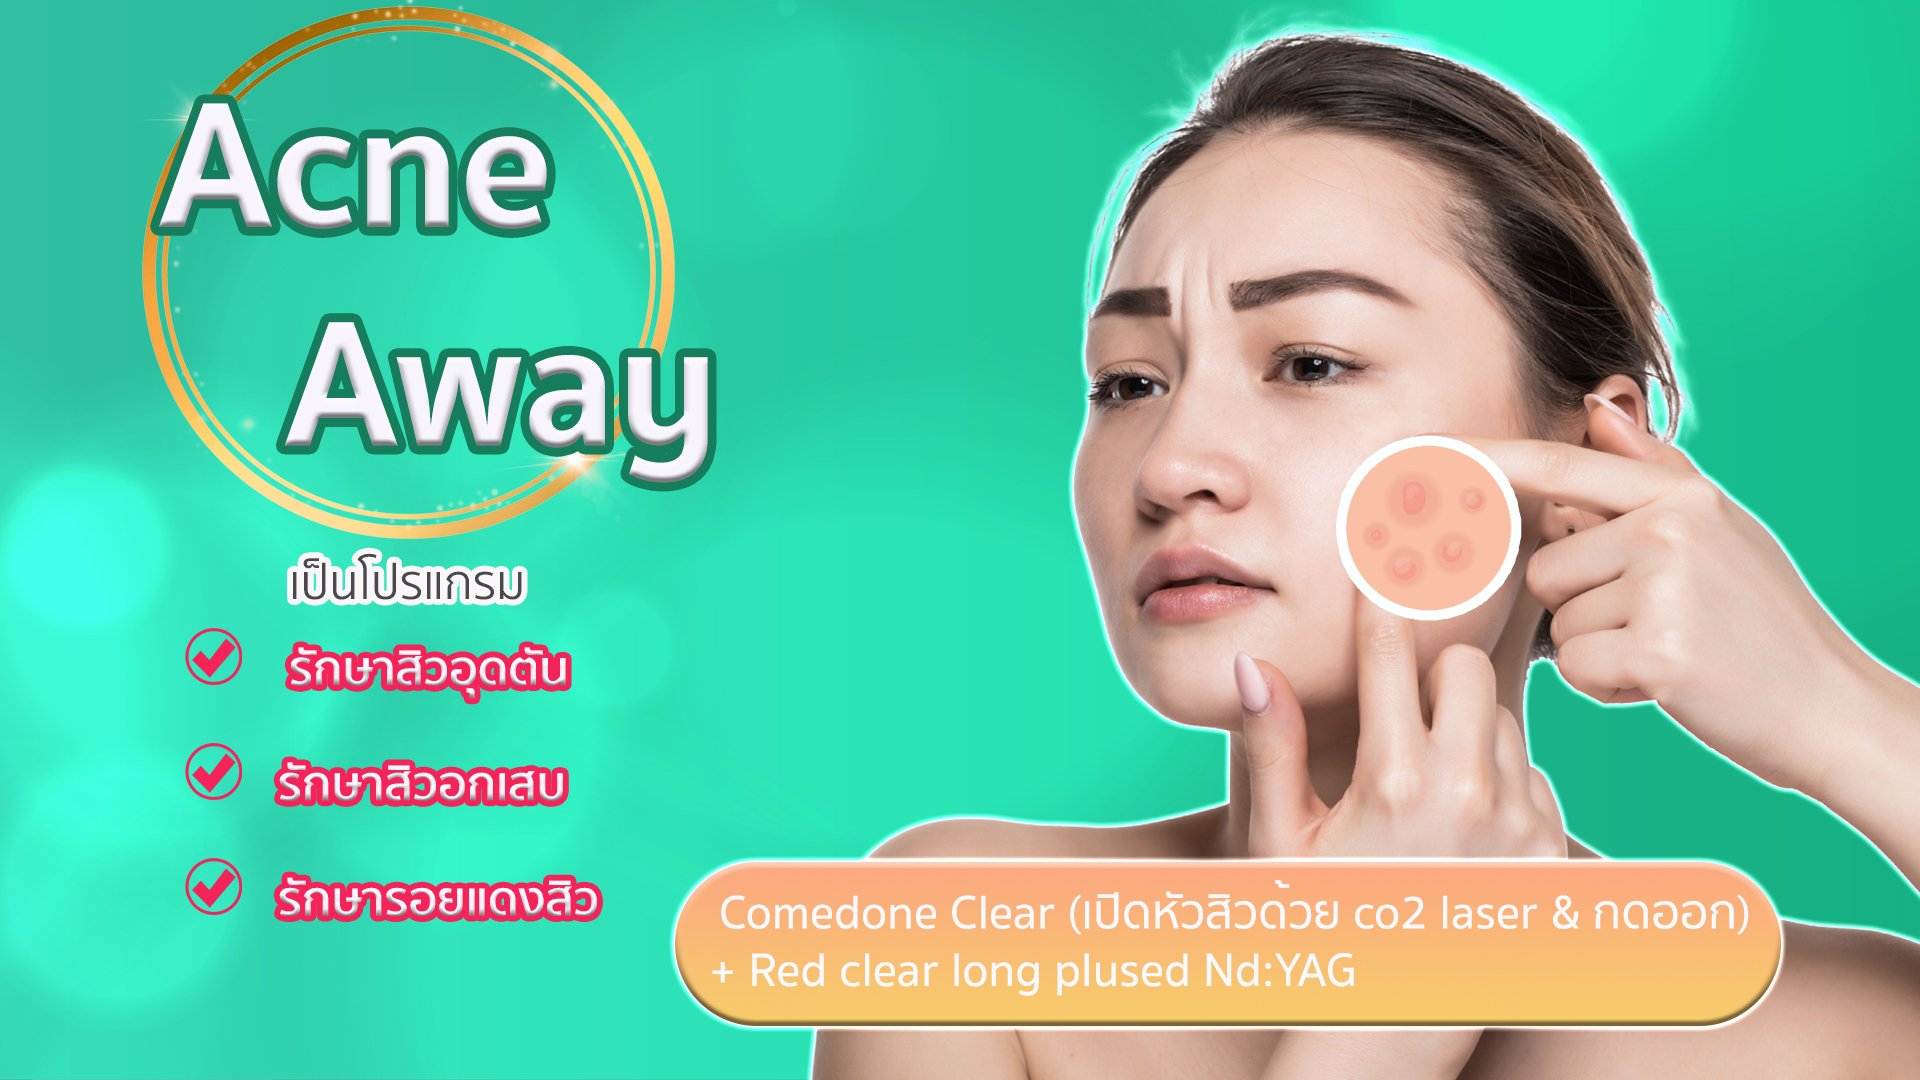 Acne A Way